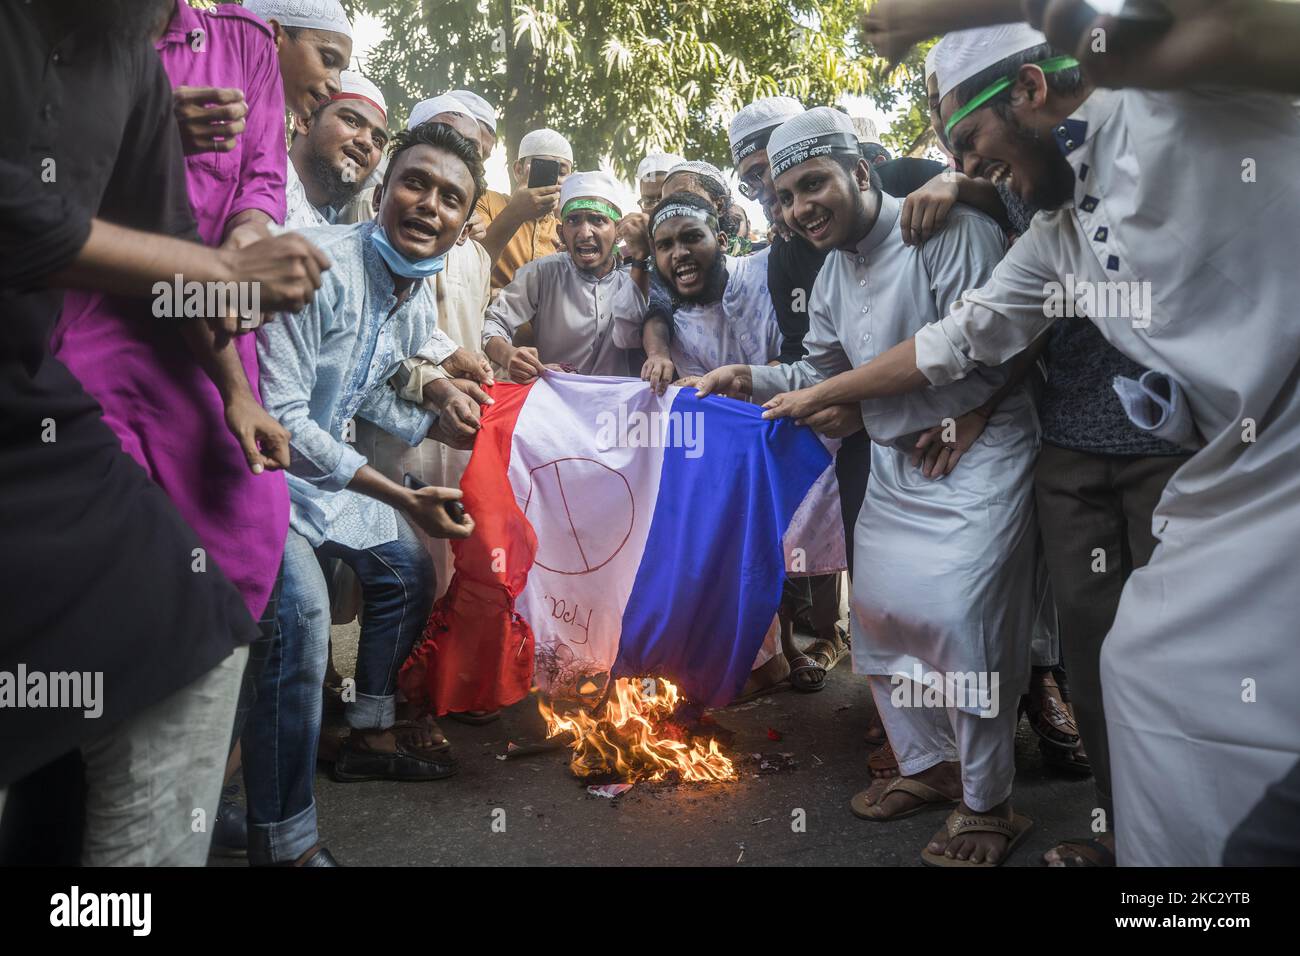 Während einer islamistischen politischen Partei Islami Andolon Bangladesh, die am 30. Oktober 2020 in Dhaka zum Boykott französischer Produkte aufruft und Macrons Kommentare über Karikaturen des Propheten Mohammed anprangert, wird auf dem Boden eine französische Nationalflagge gebrannt. (Foto von Ahmed Salahuddin/NurPhoto) Stockfoto